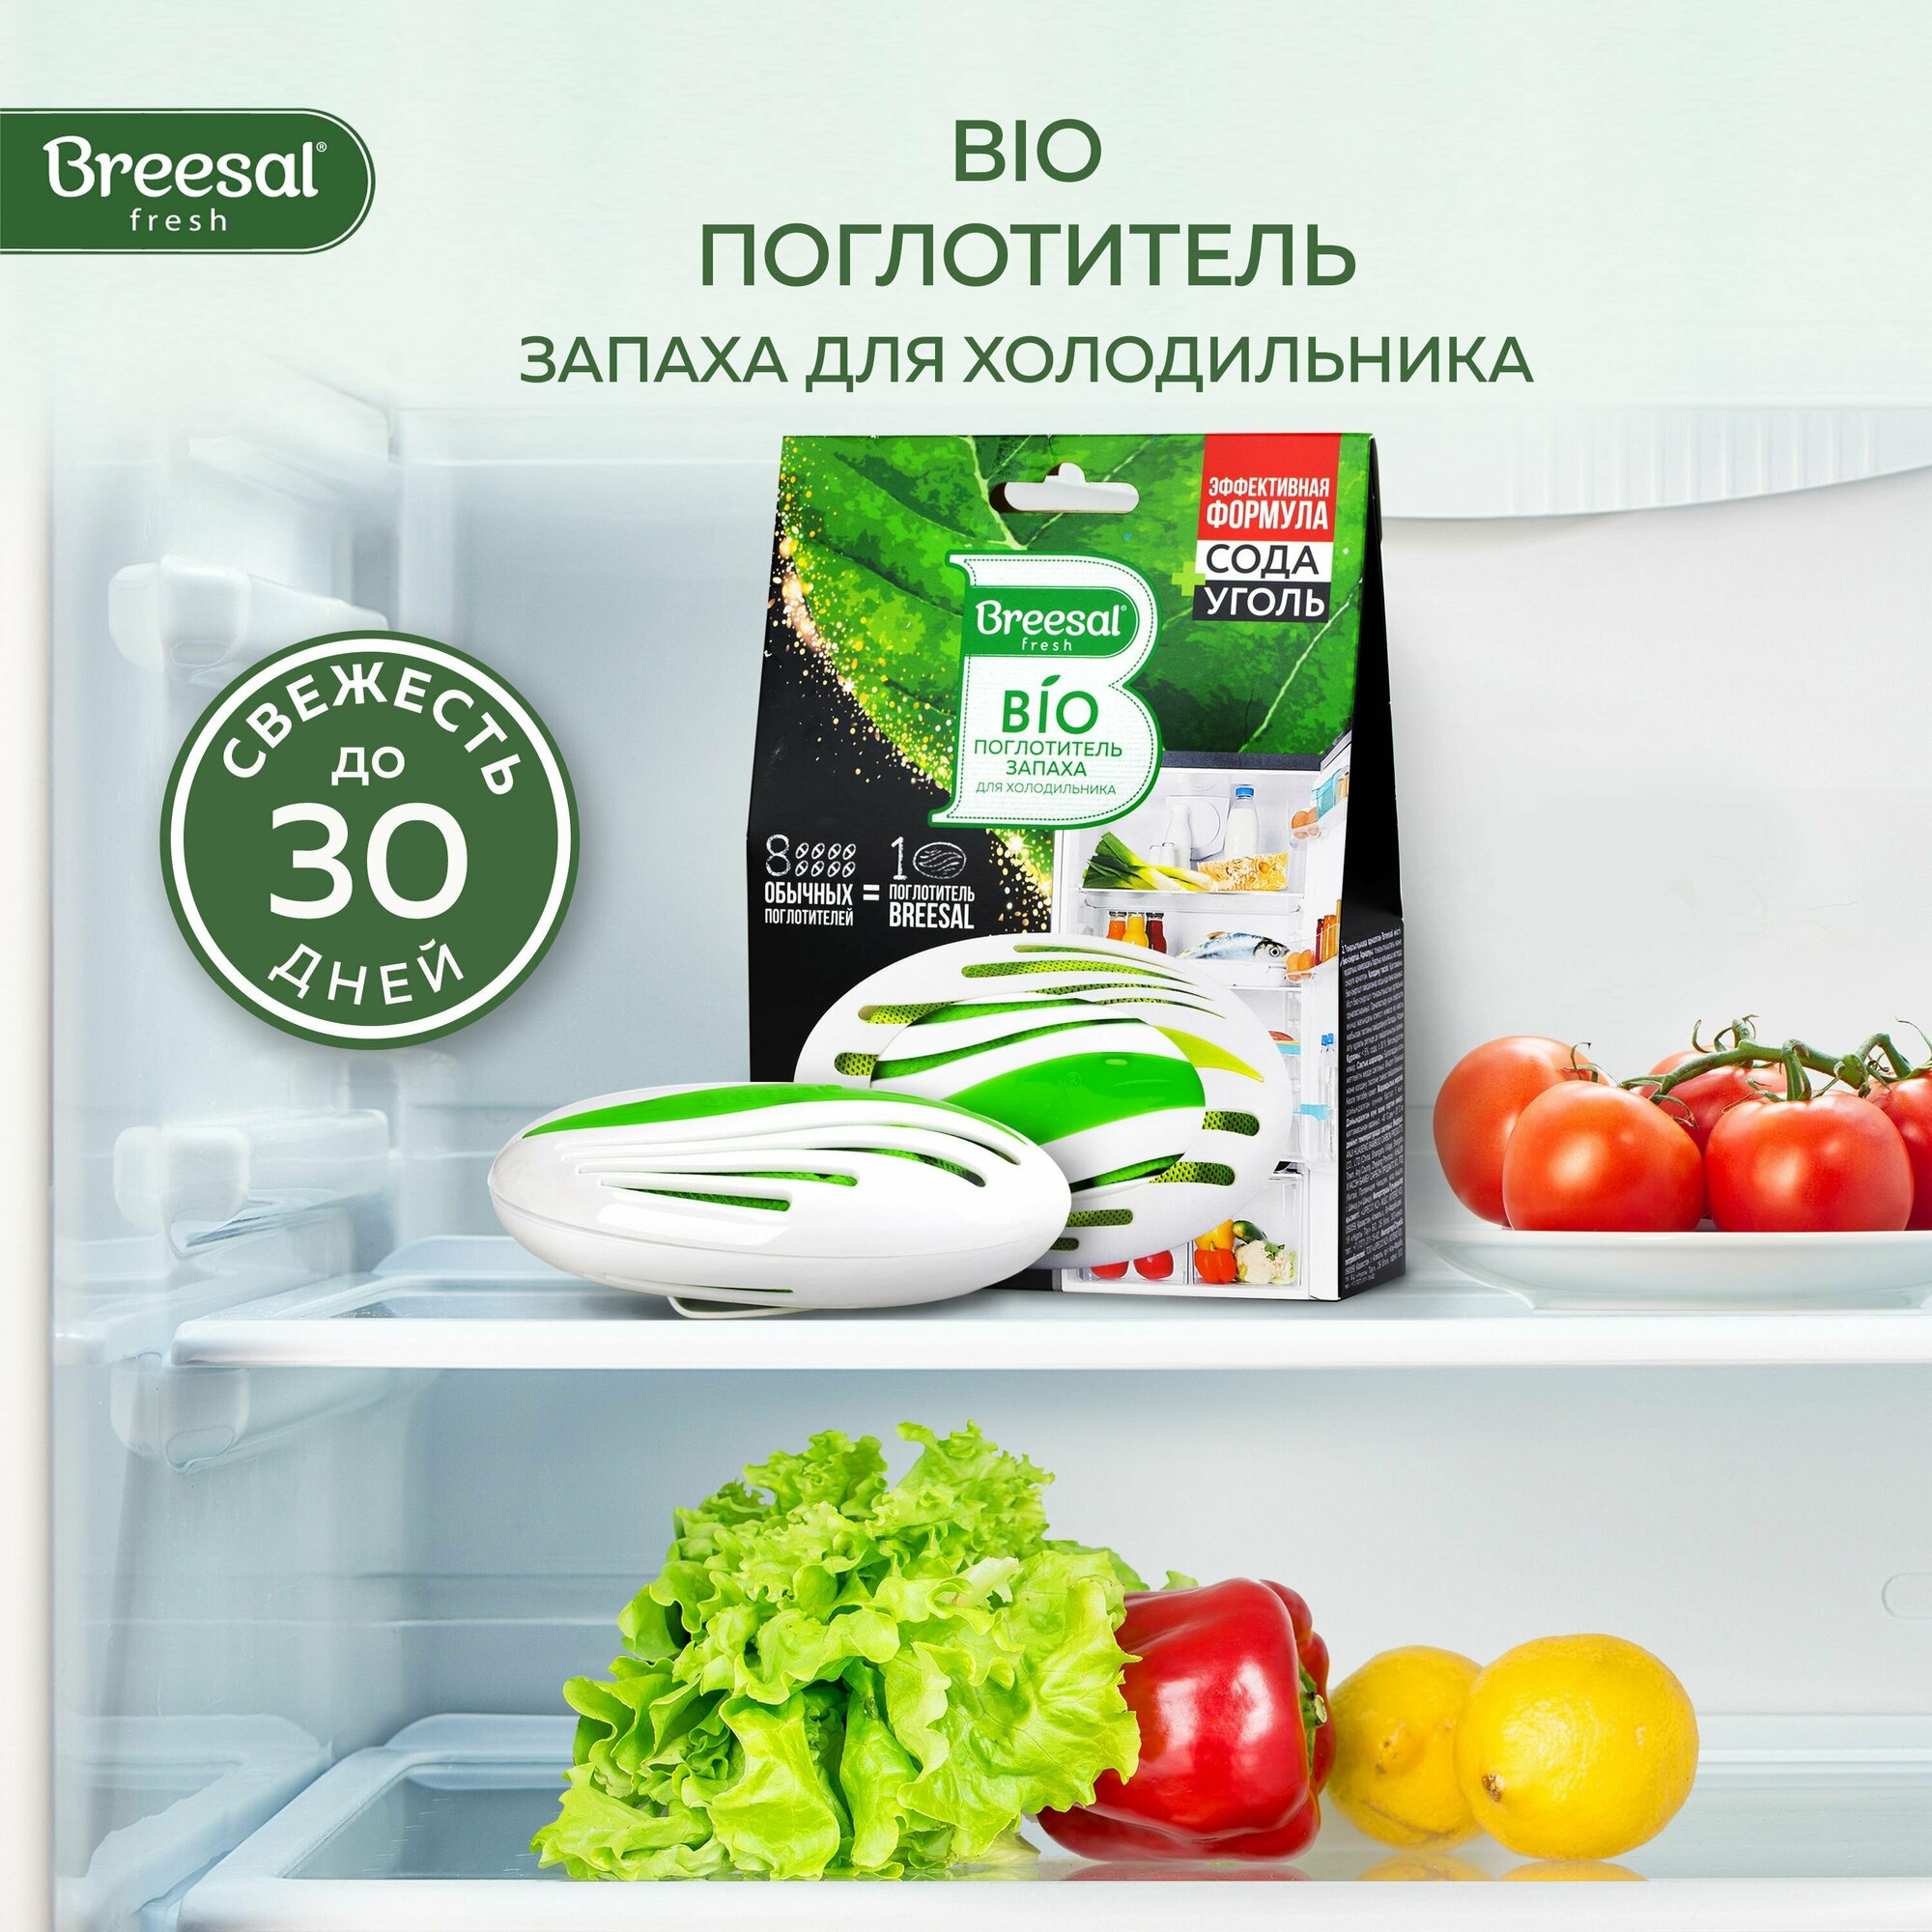 Breesal био-поглотитель запаха для холодильника 80 гр